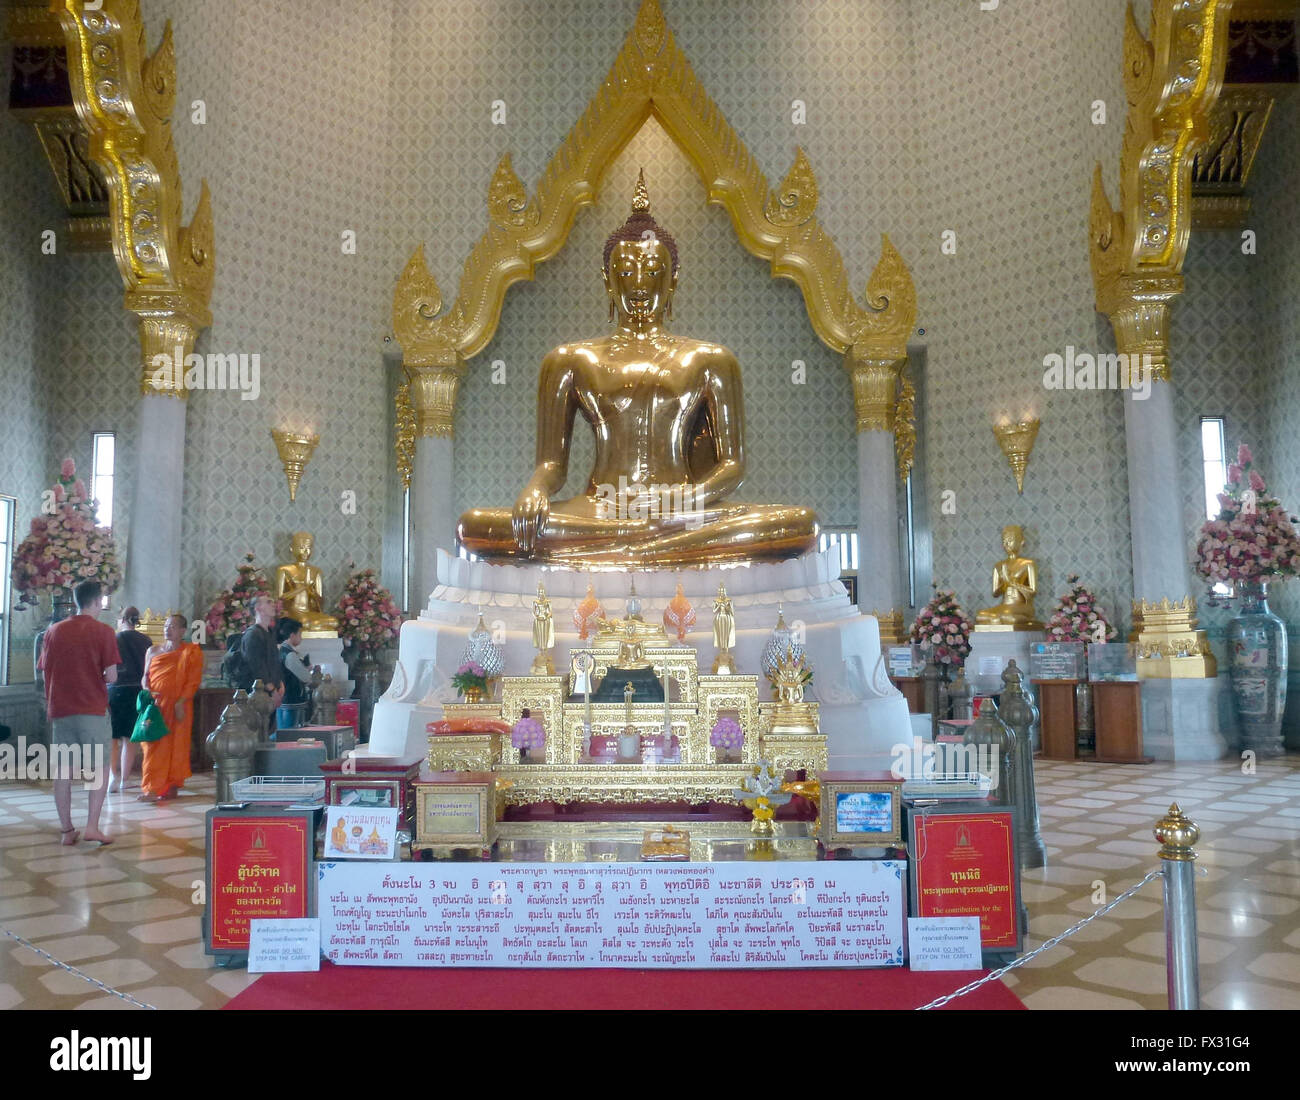 Bangkok, Thailand. 2. März 2016. Der goldene Buddha im Wat Traimit in Bangkok, Thailand, 2. März 2016. Der Wat Traimit, auch bekannt als Wat Traimit Withayaram Worawihan, ist ein buddhistischer Tempel (Wat) im Samphanthawong Bezirk von Bangkok. Es ist auch bekannt als "Tempel des goldenen Buddha" unter den Touristen. Die wichtigste touristische Attraktion ist dies mehr als 700 Jahre alten Buddha-Statue aus der Sukhothai-Periode. Die goldene Statue ist mehr als 3 Meter hoch und wiegt rund 5,5 Tonnen. Foto: ALEXANDRA SCHULER/Dpa - NO-Draht-SERVICE-/ Dpa/Alamy Live News Stockfoto